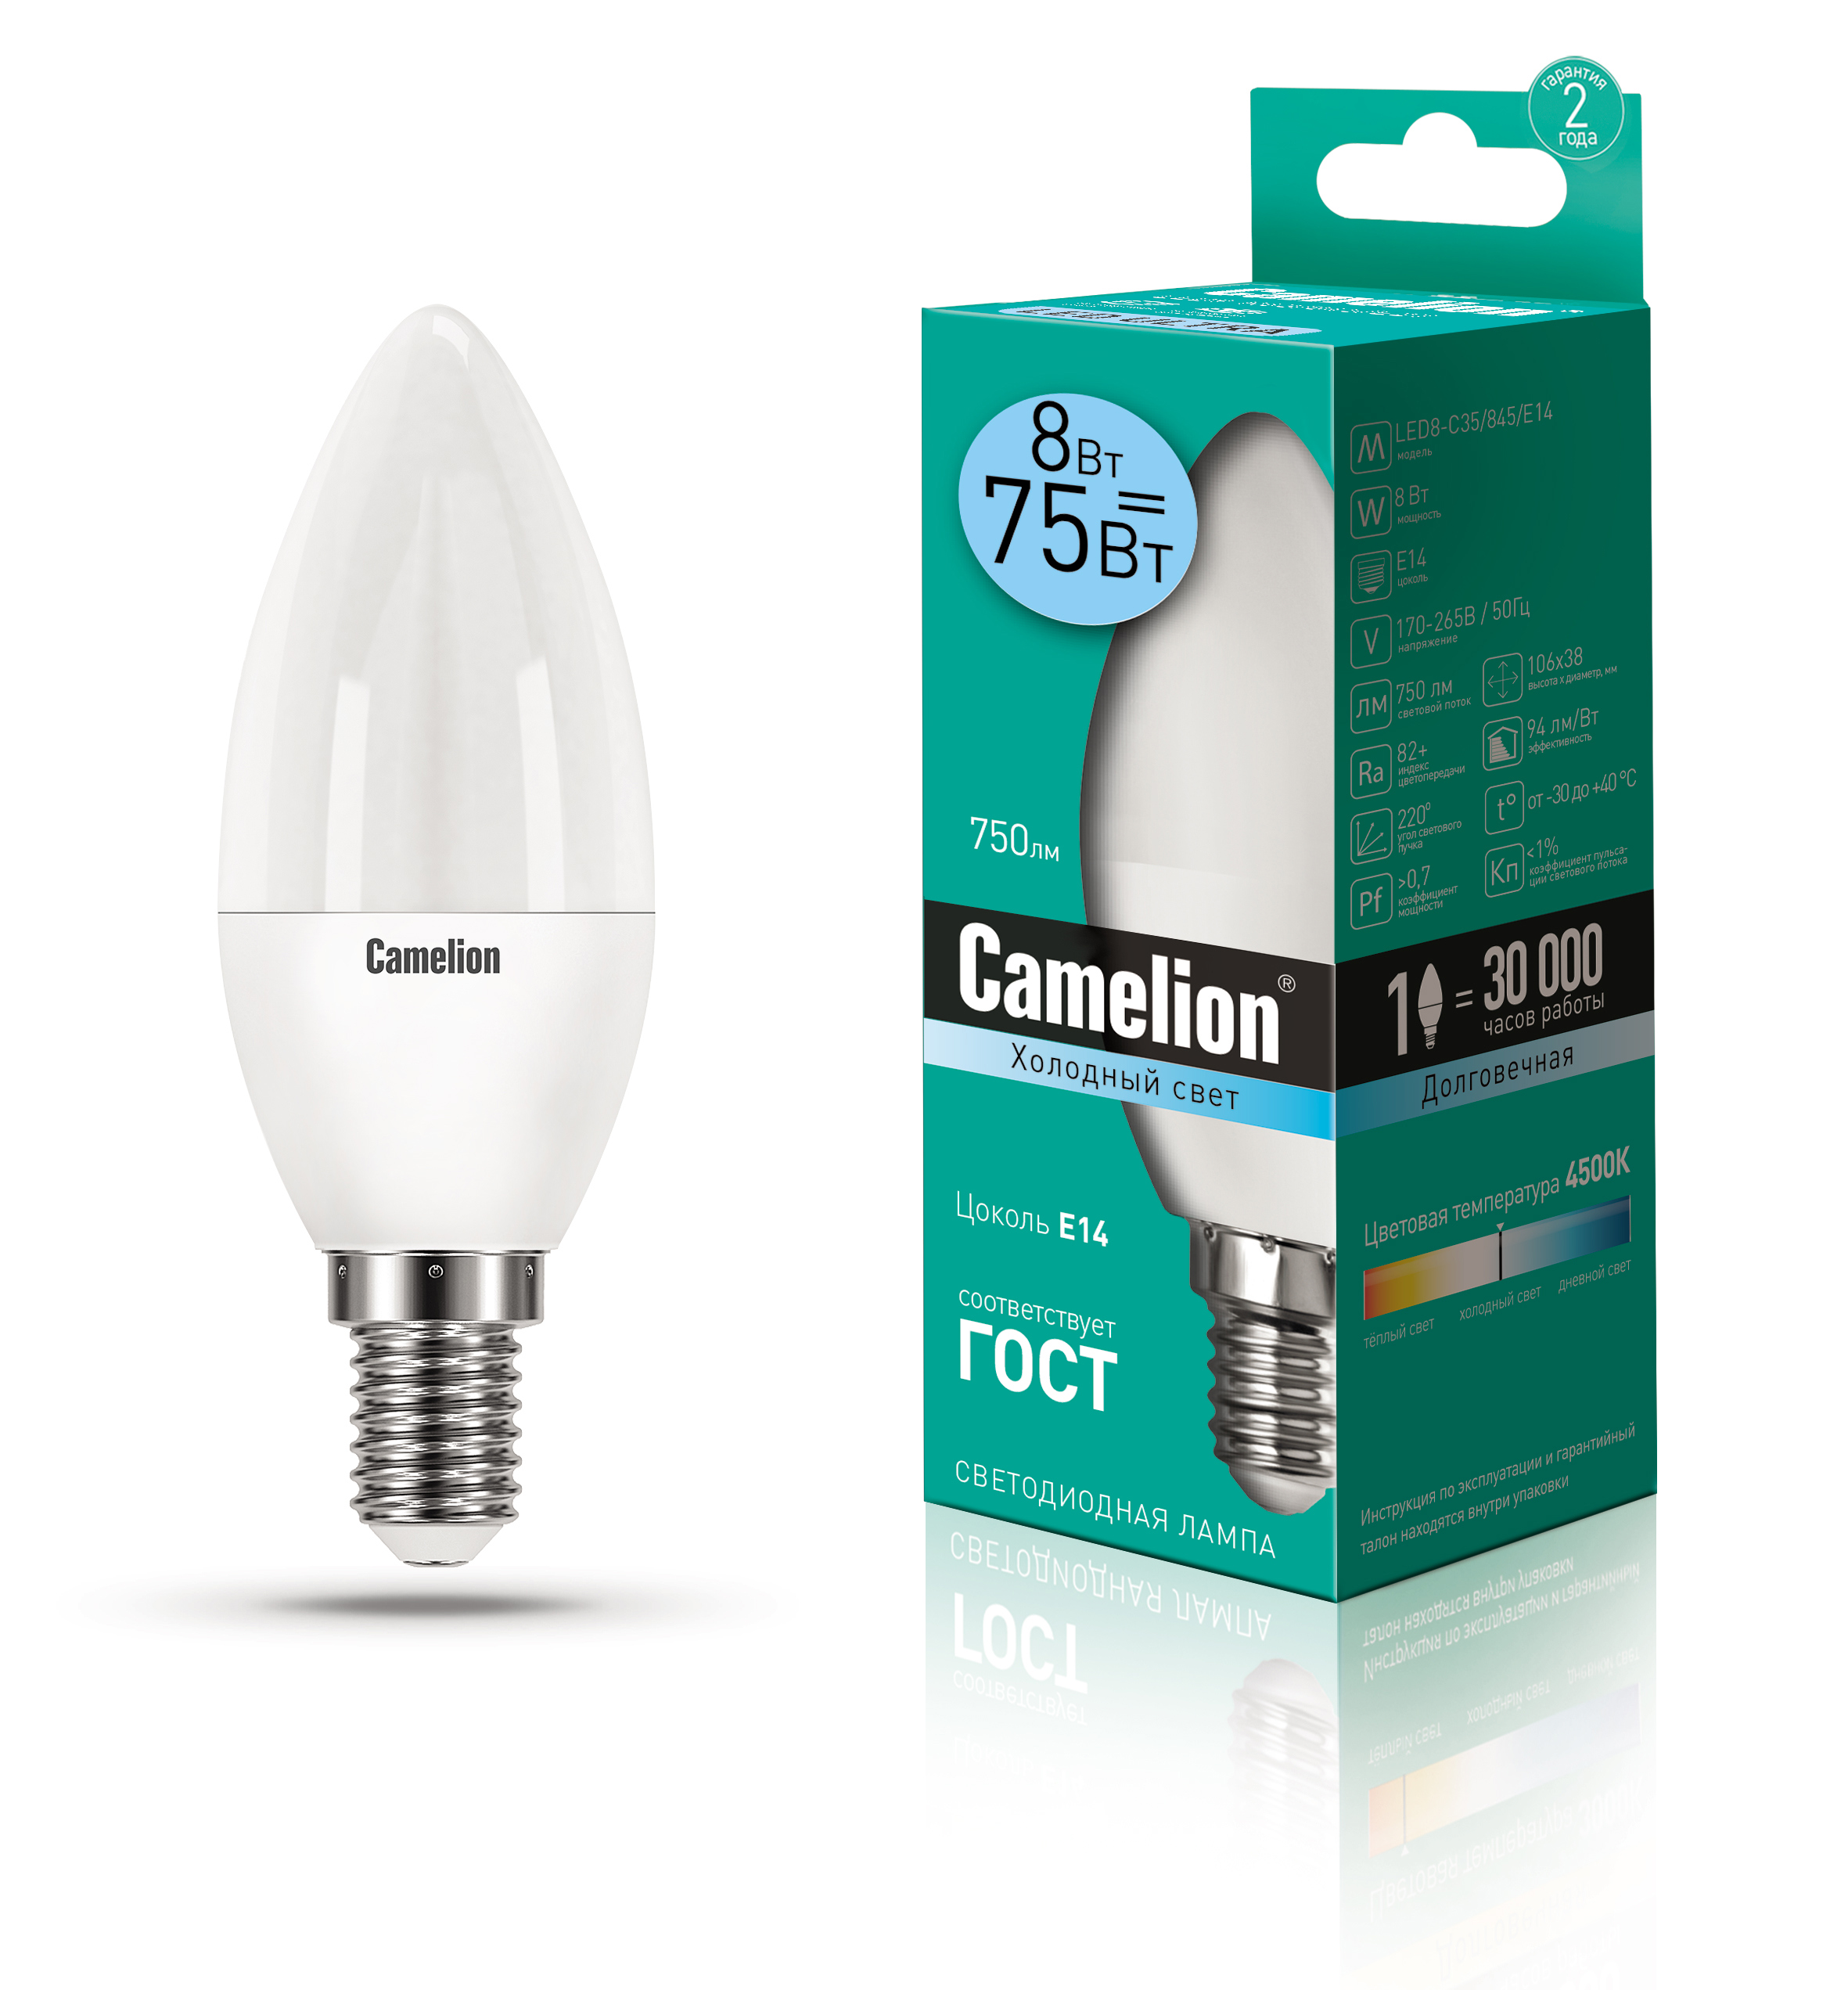  лампа Camelion LED8-C35/845/E14 12386 по цене 123 ₽/шт .